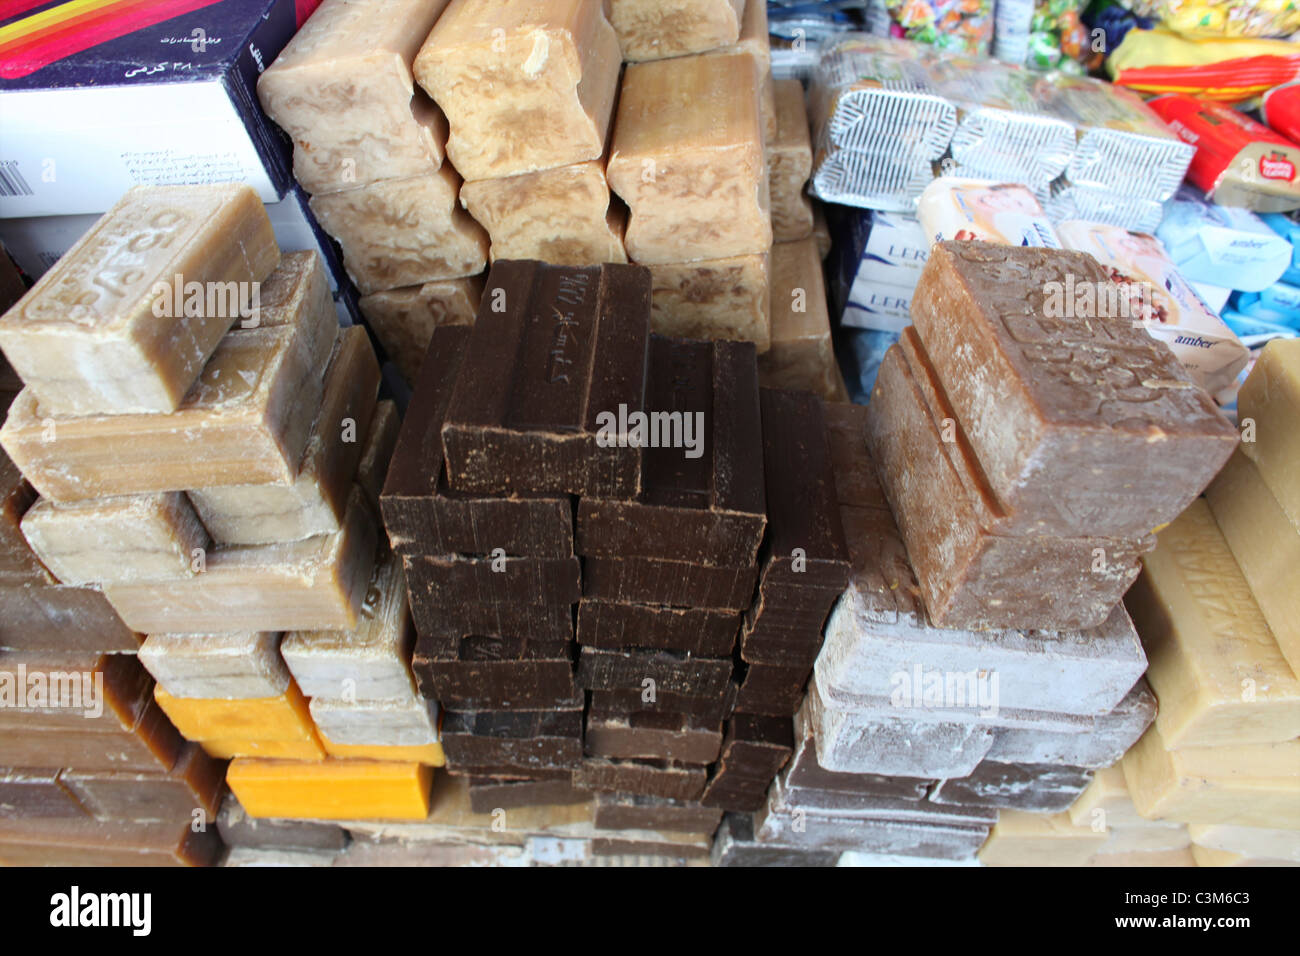 La vida cotidiana en el mercado en Kunduz Foto de stock